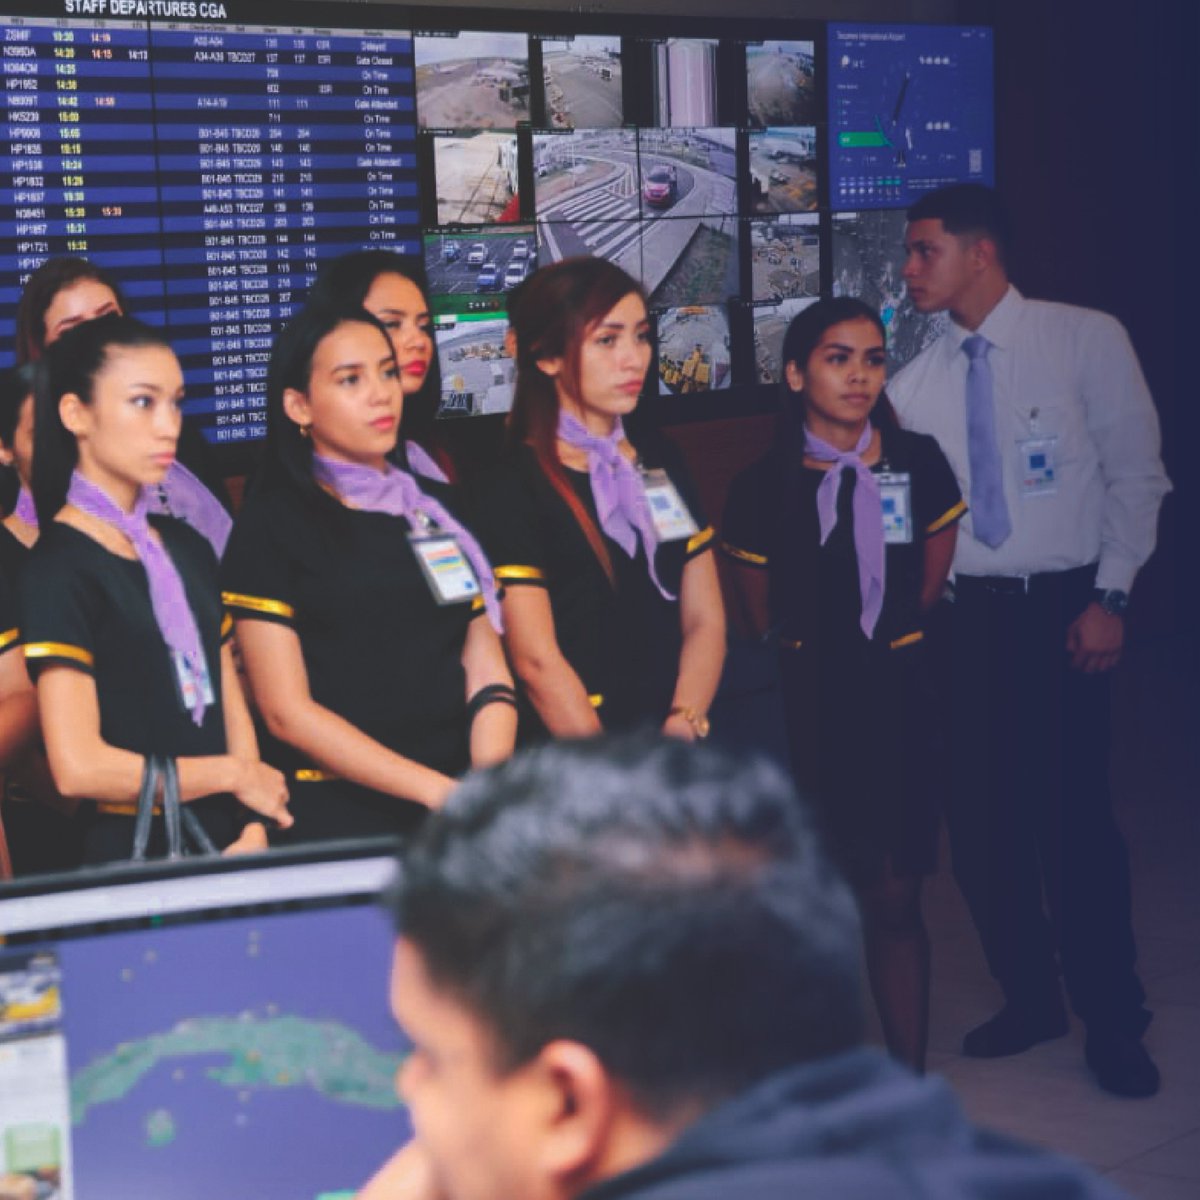 Estudiantes de la carrera Servicio en Aerolínea del Instituto Superior Nueva Luz de la provincia de #Chiriquí, visitaron las instalaciones de @tocumenaero ✈️⁠
⁠
¡Fue un placer tenerlas en nuestro aeropuerto! 🤩⁠
⁠
#LaPuertaDeLasAméricas⁠
#AeropuertoDeTocumen⁠